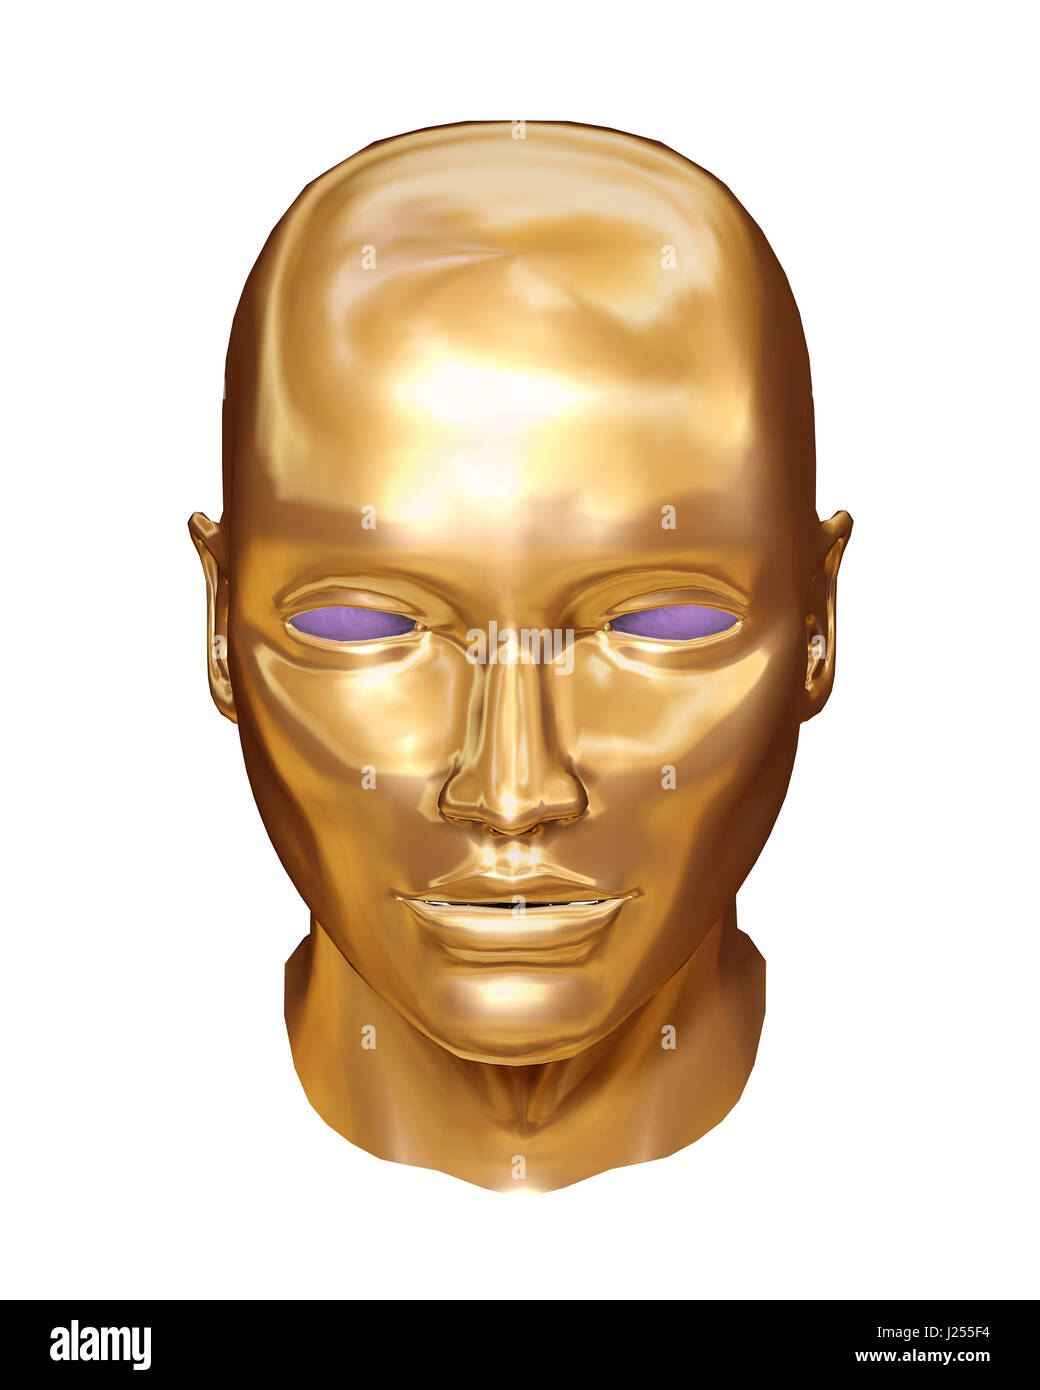 Gold face robot Stock Photo